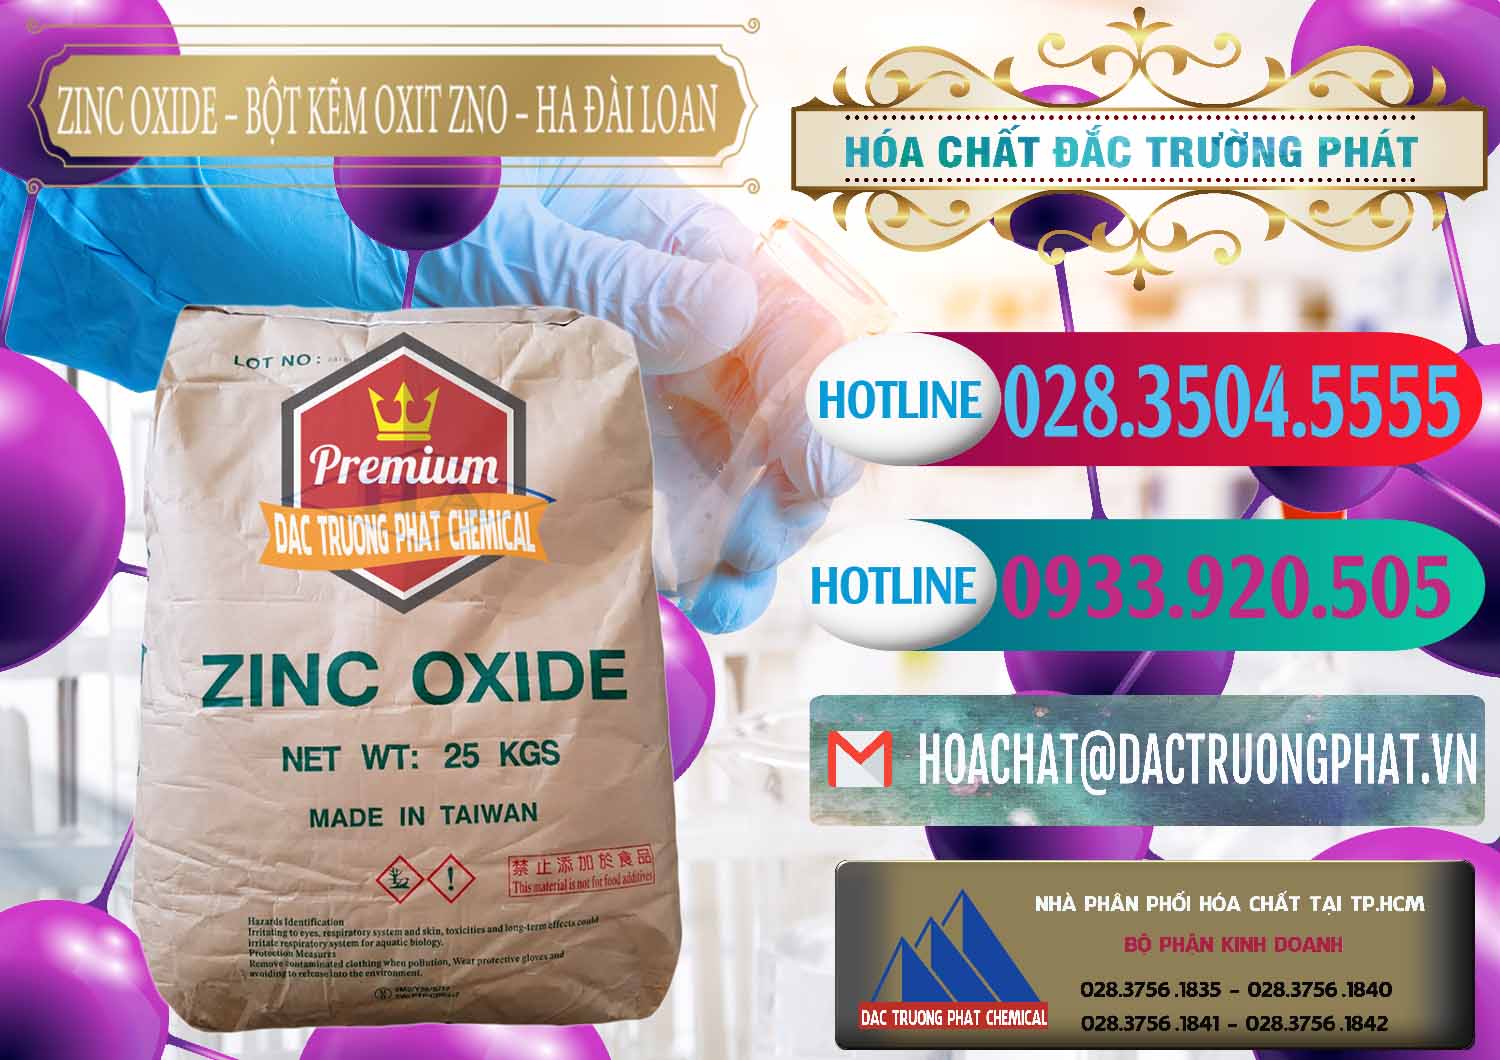 Cty bán ( cung ứng ) Zinc Oxide - Bột Kẽm Oxit ZNO HA Đài Loan Taiwan - 0180 - Đơn vị chuyên kinh doanh - cung cấp hóa chất tại TP.HCM - truongphat.vn